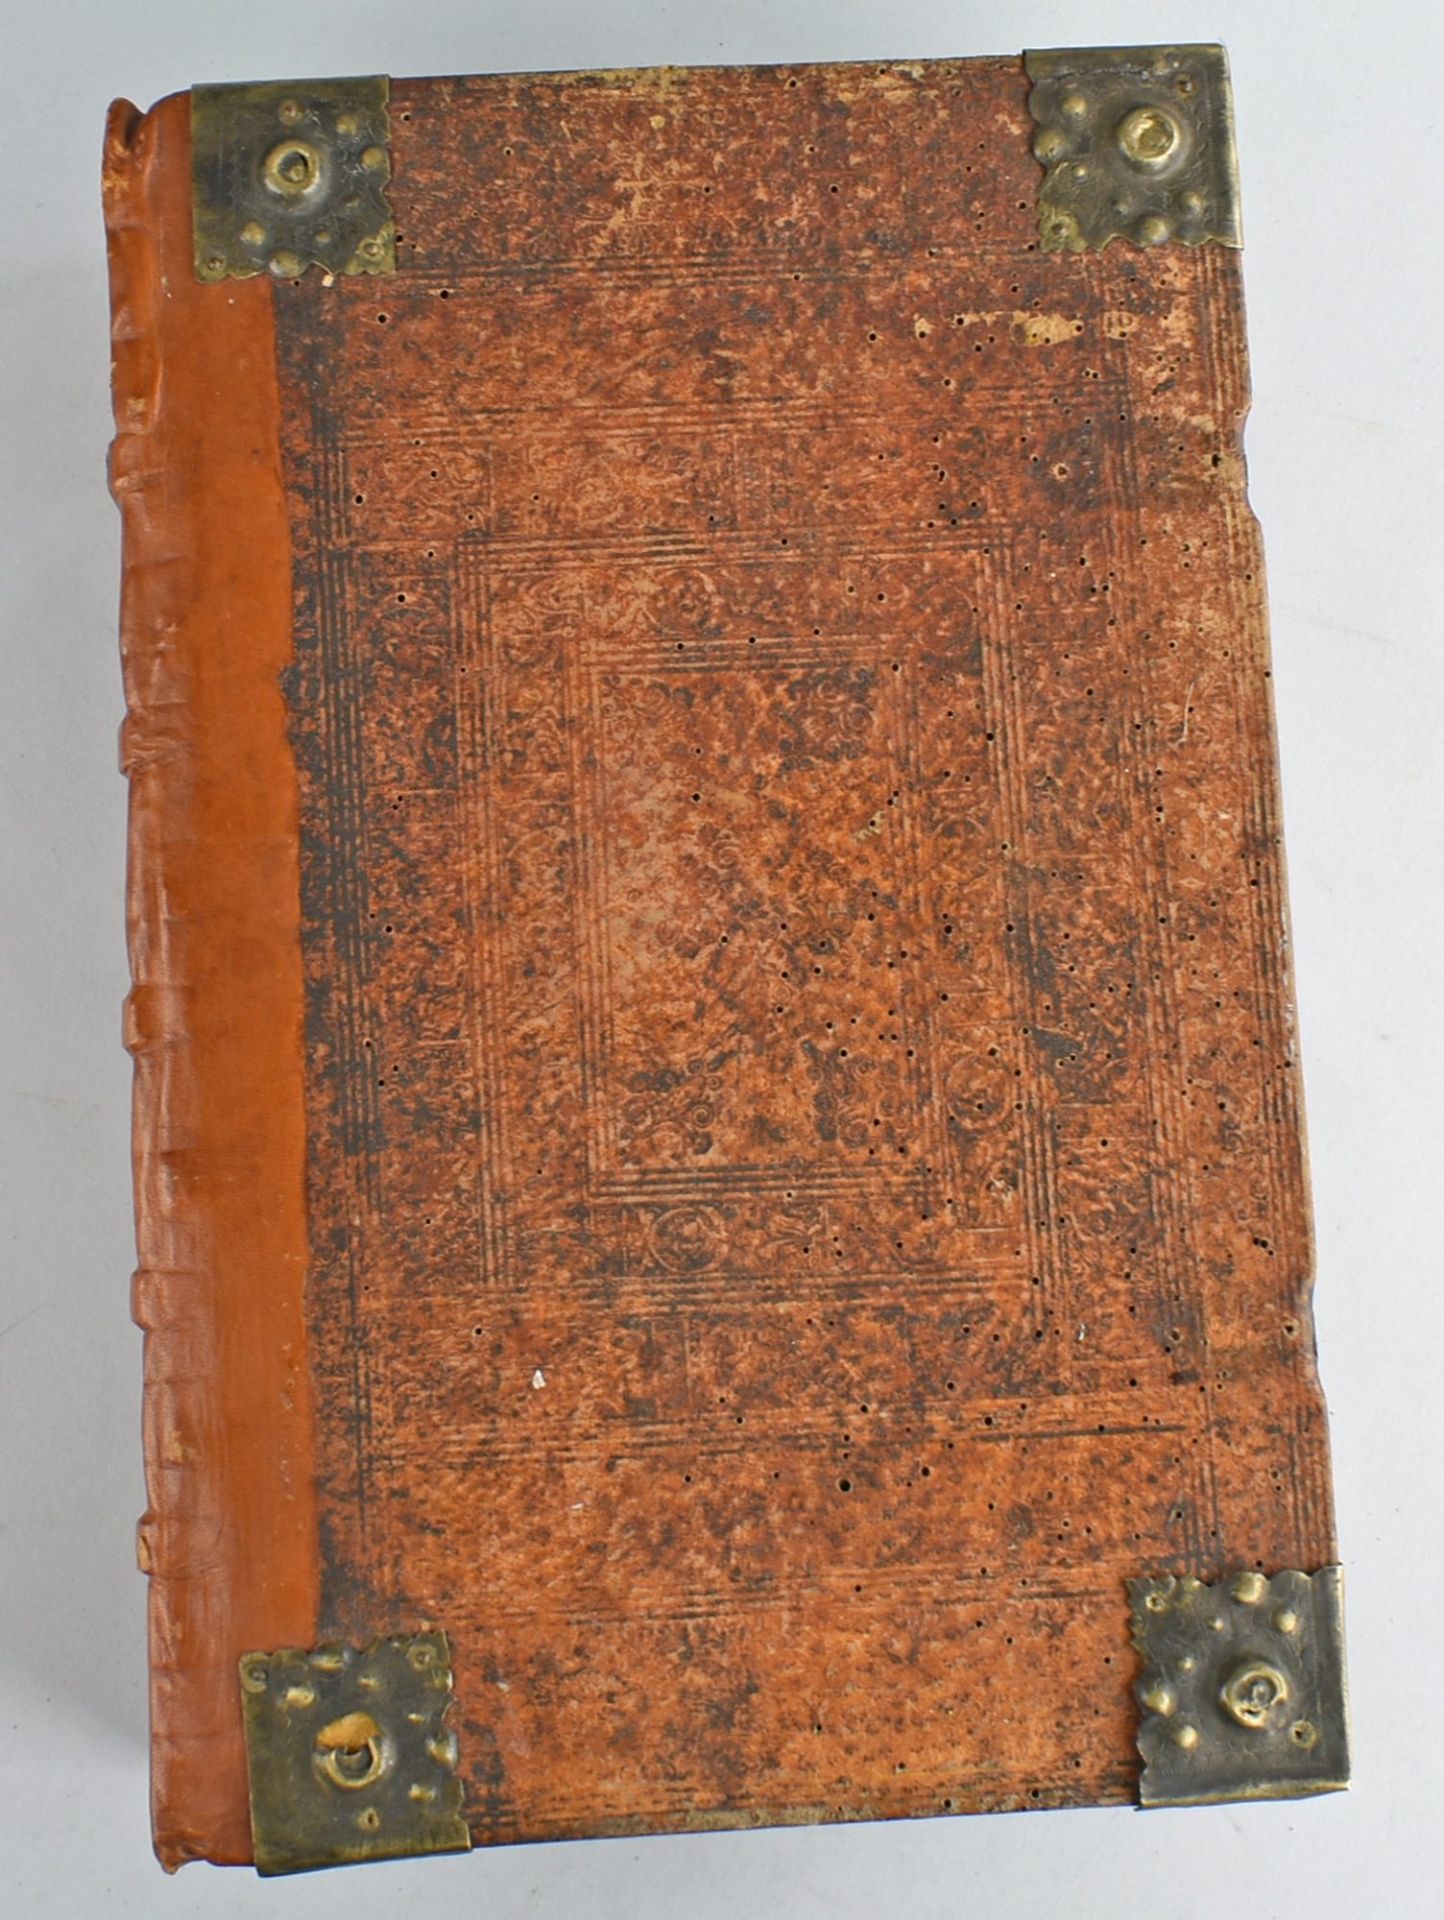 Historische Bibel 18. Jh. großformatige illustrierte Bibelausgabe, Holzdeckel mit Pergament, - Bild 2 aus 3